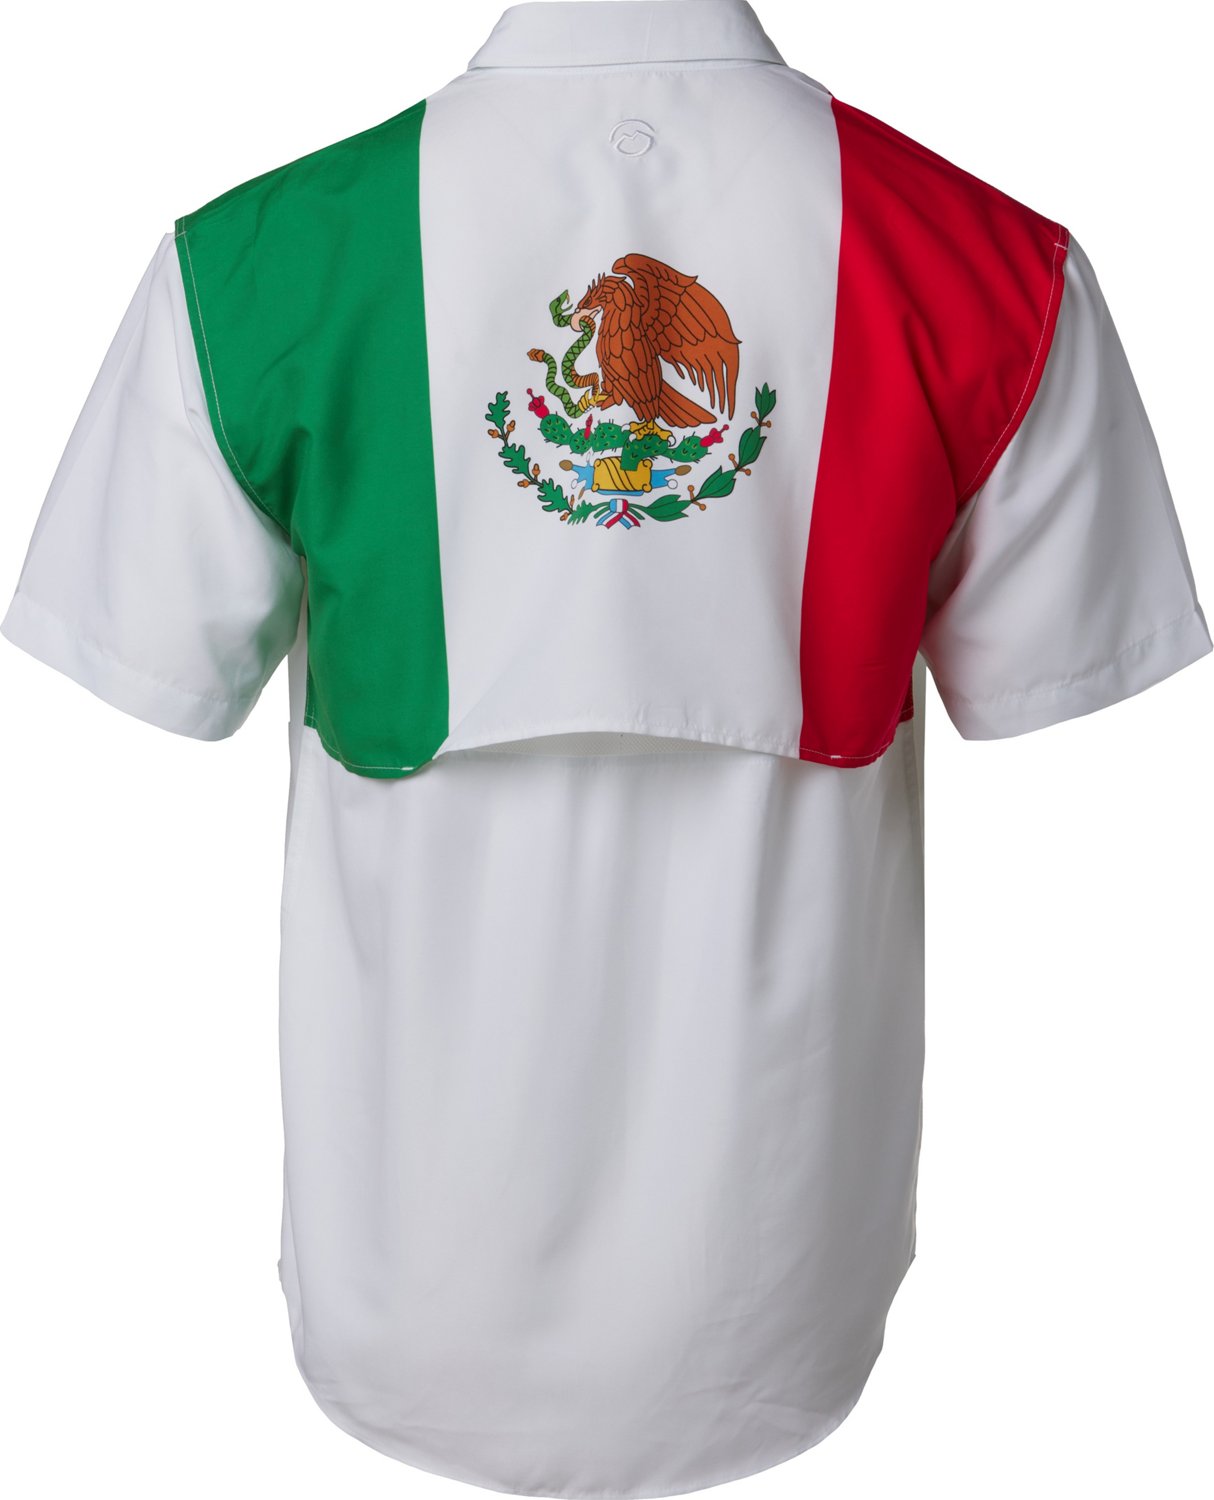 Magellan Outdoors Shirts | Magellan Lake Fork Fishing Shirt Men's XL White Flag Short Sleeve Outdoors | Color: Red/White | Size: XL | Mamabearsstuff's